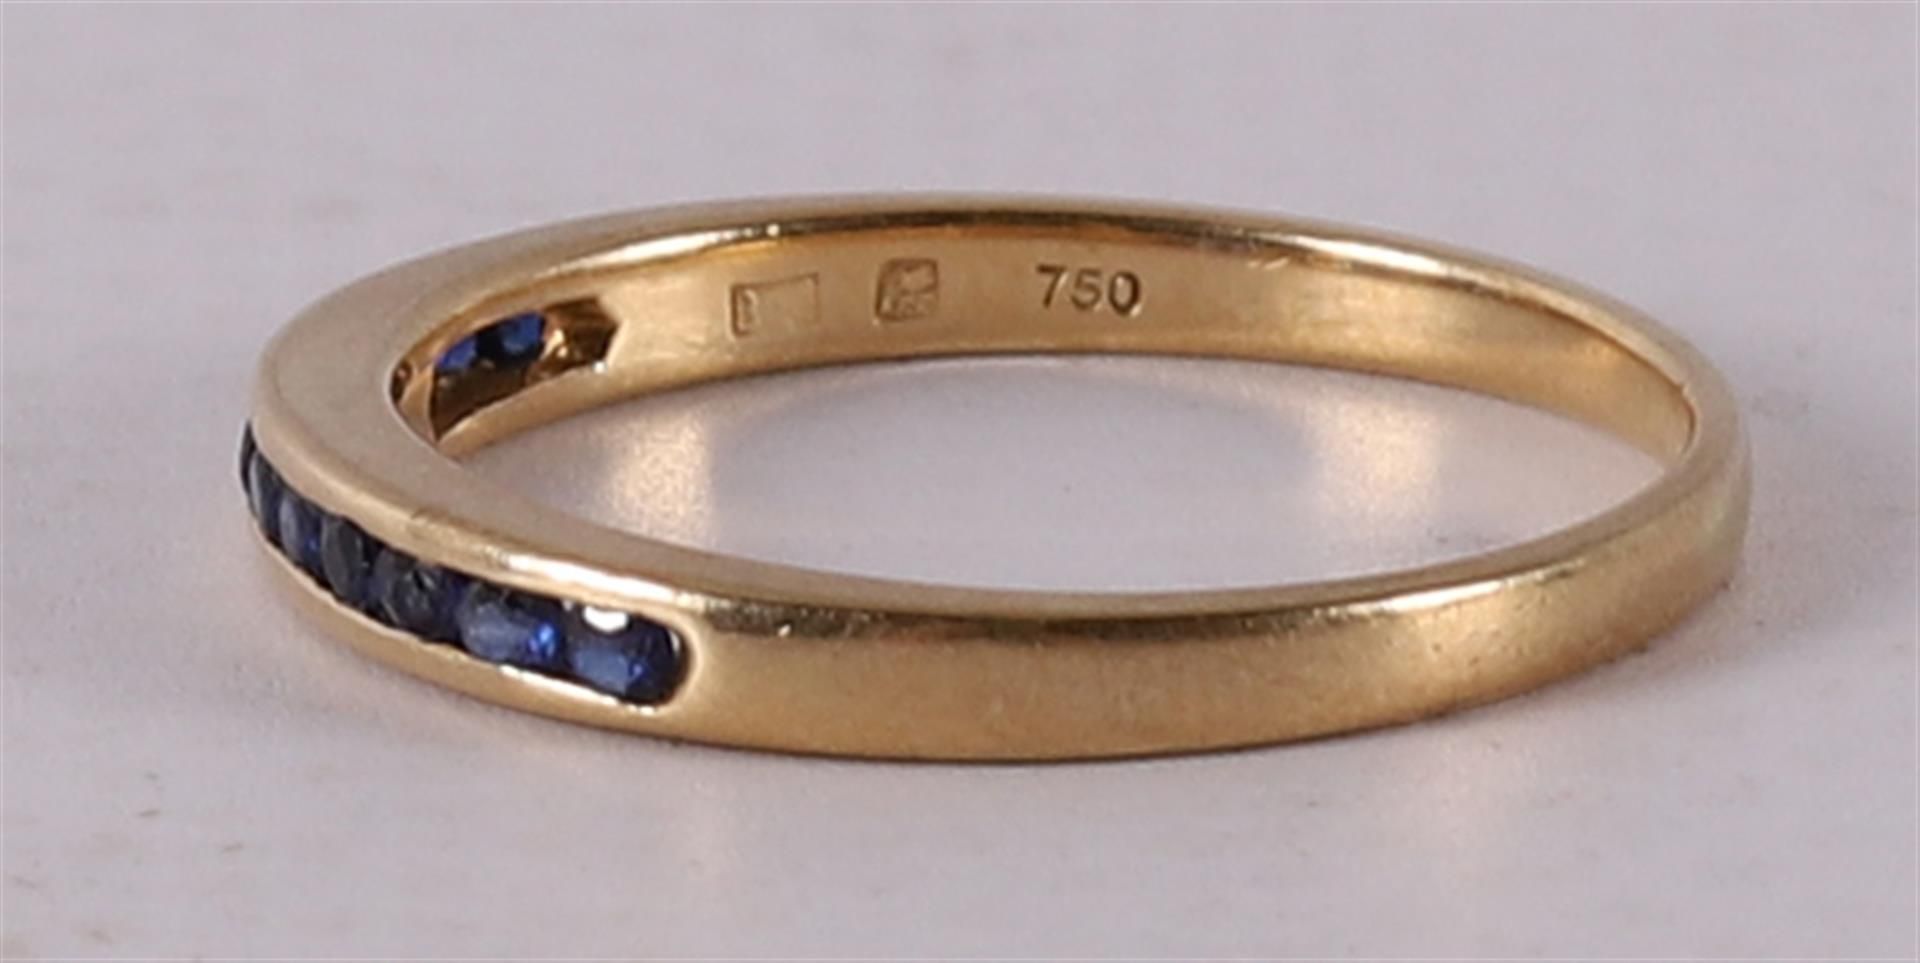 An 18 kt gold row ring with 12 facet cut blue sapphires - Bild 2 aus 2